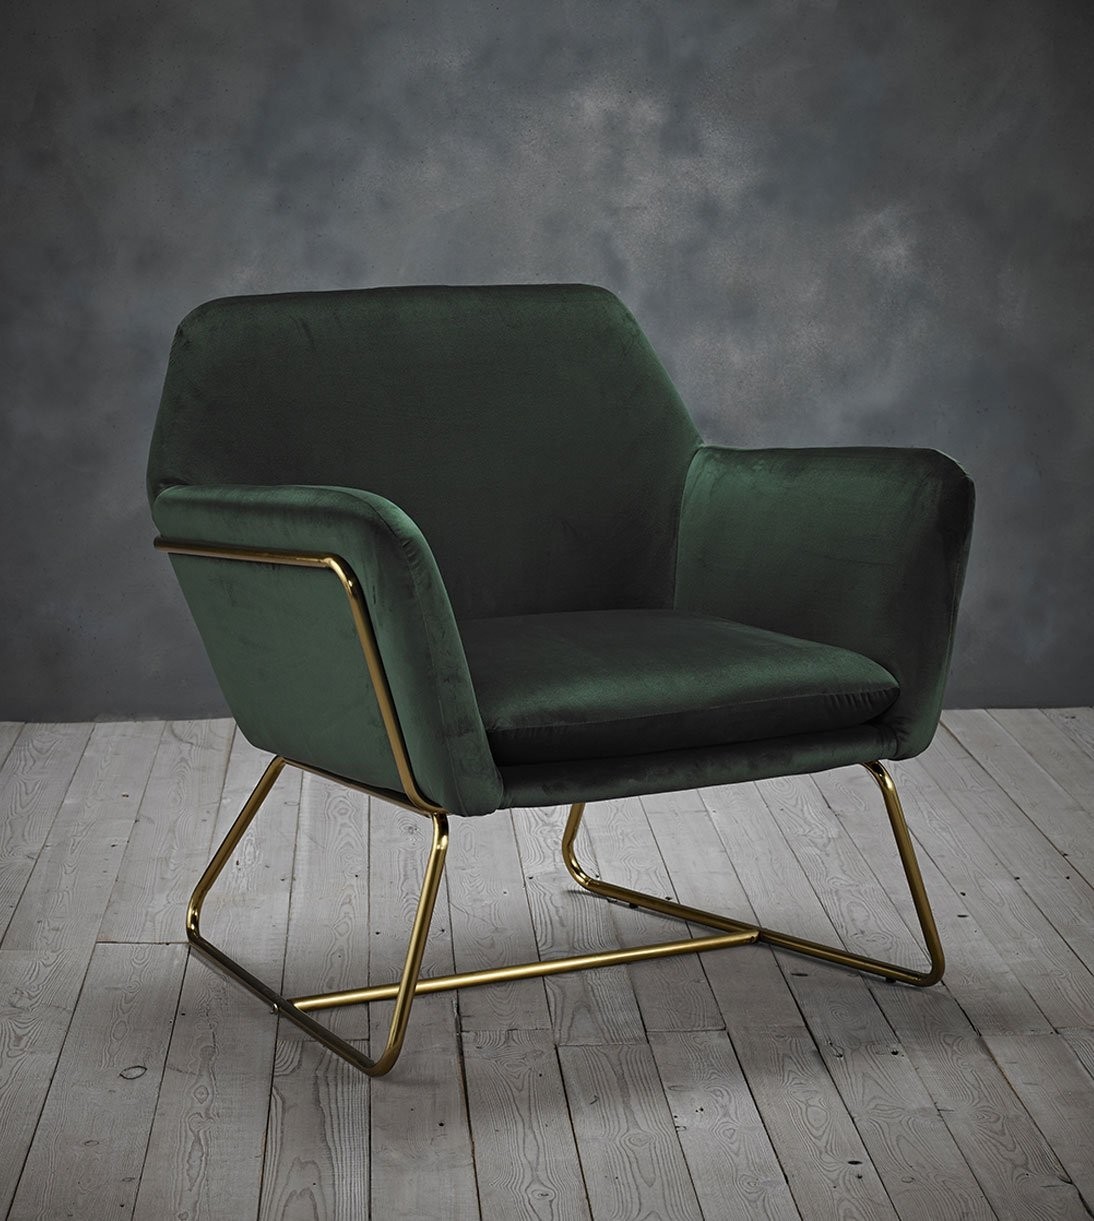 Chelsea green velvet chair upholstered fabric gold finish